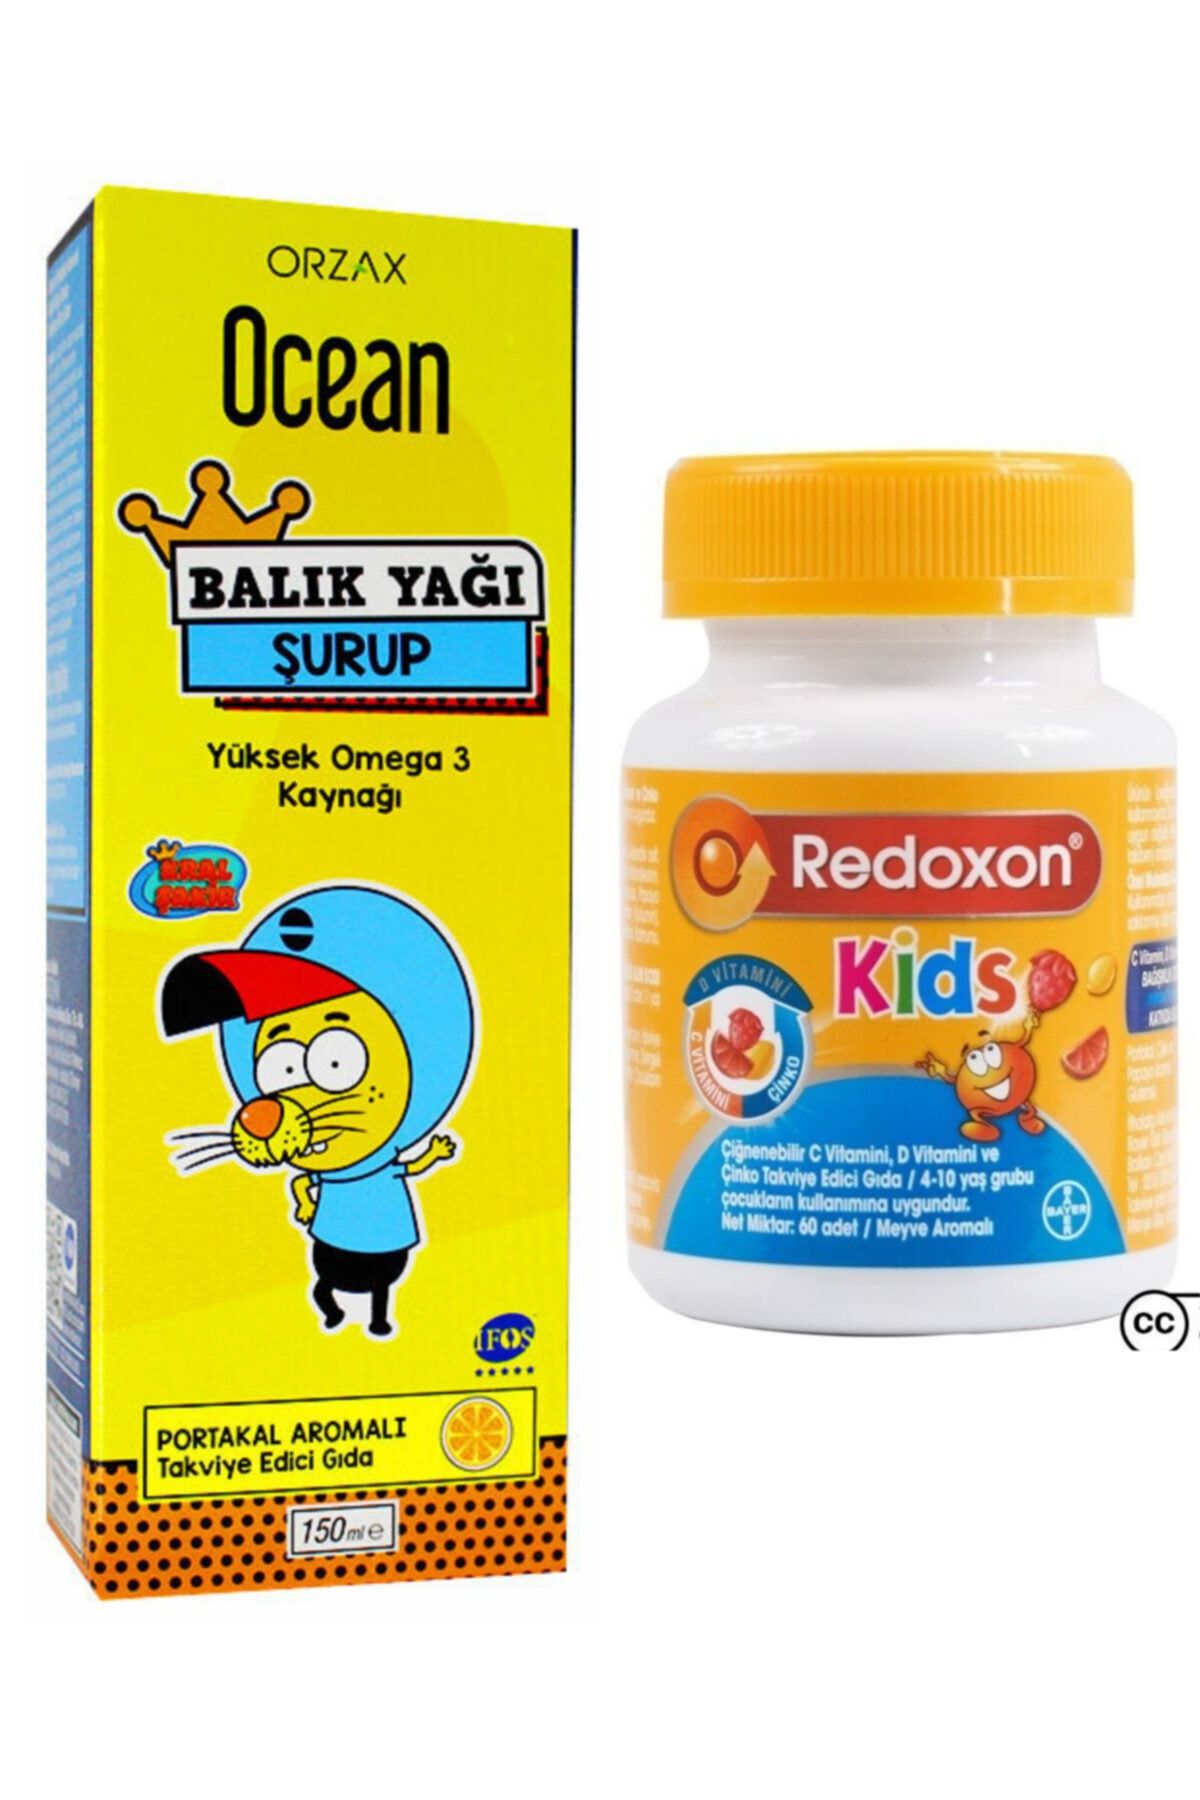 Ocean Ocean Omega 3 Portakallı Balık Yağı Şurubu 150ml Ve Redoxon Kids 60 Çiğnenebilir Tablet